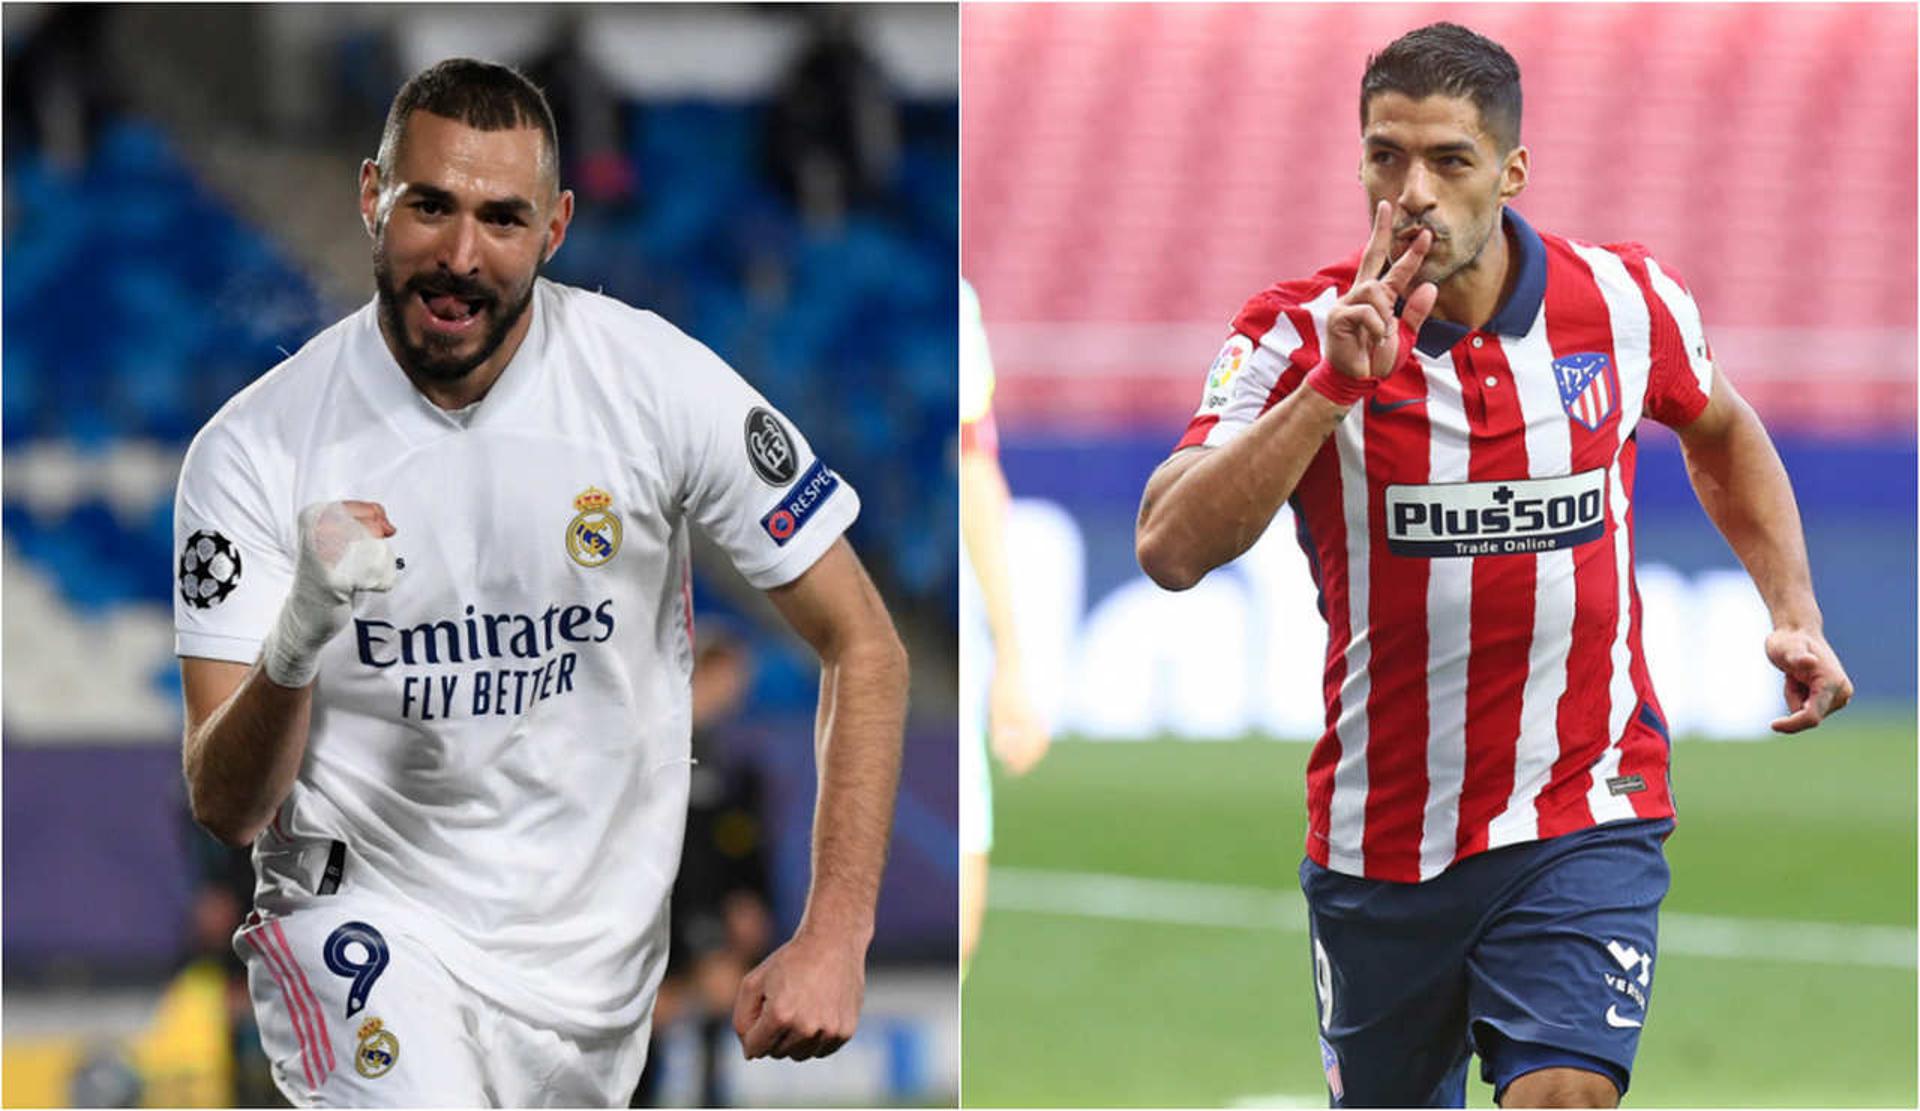 Montagem - Benzema (Real Madrid) e Suárez (Atlético de Madrid)